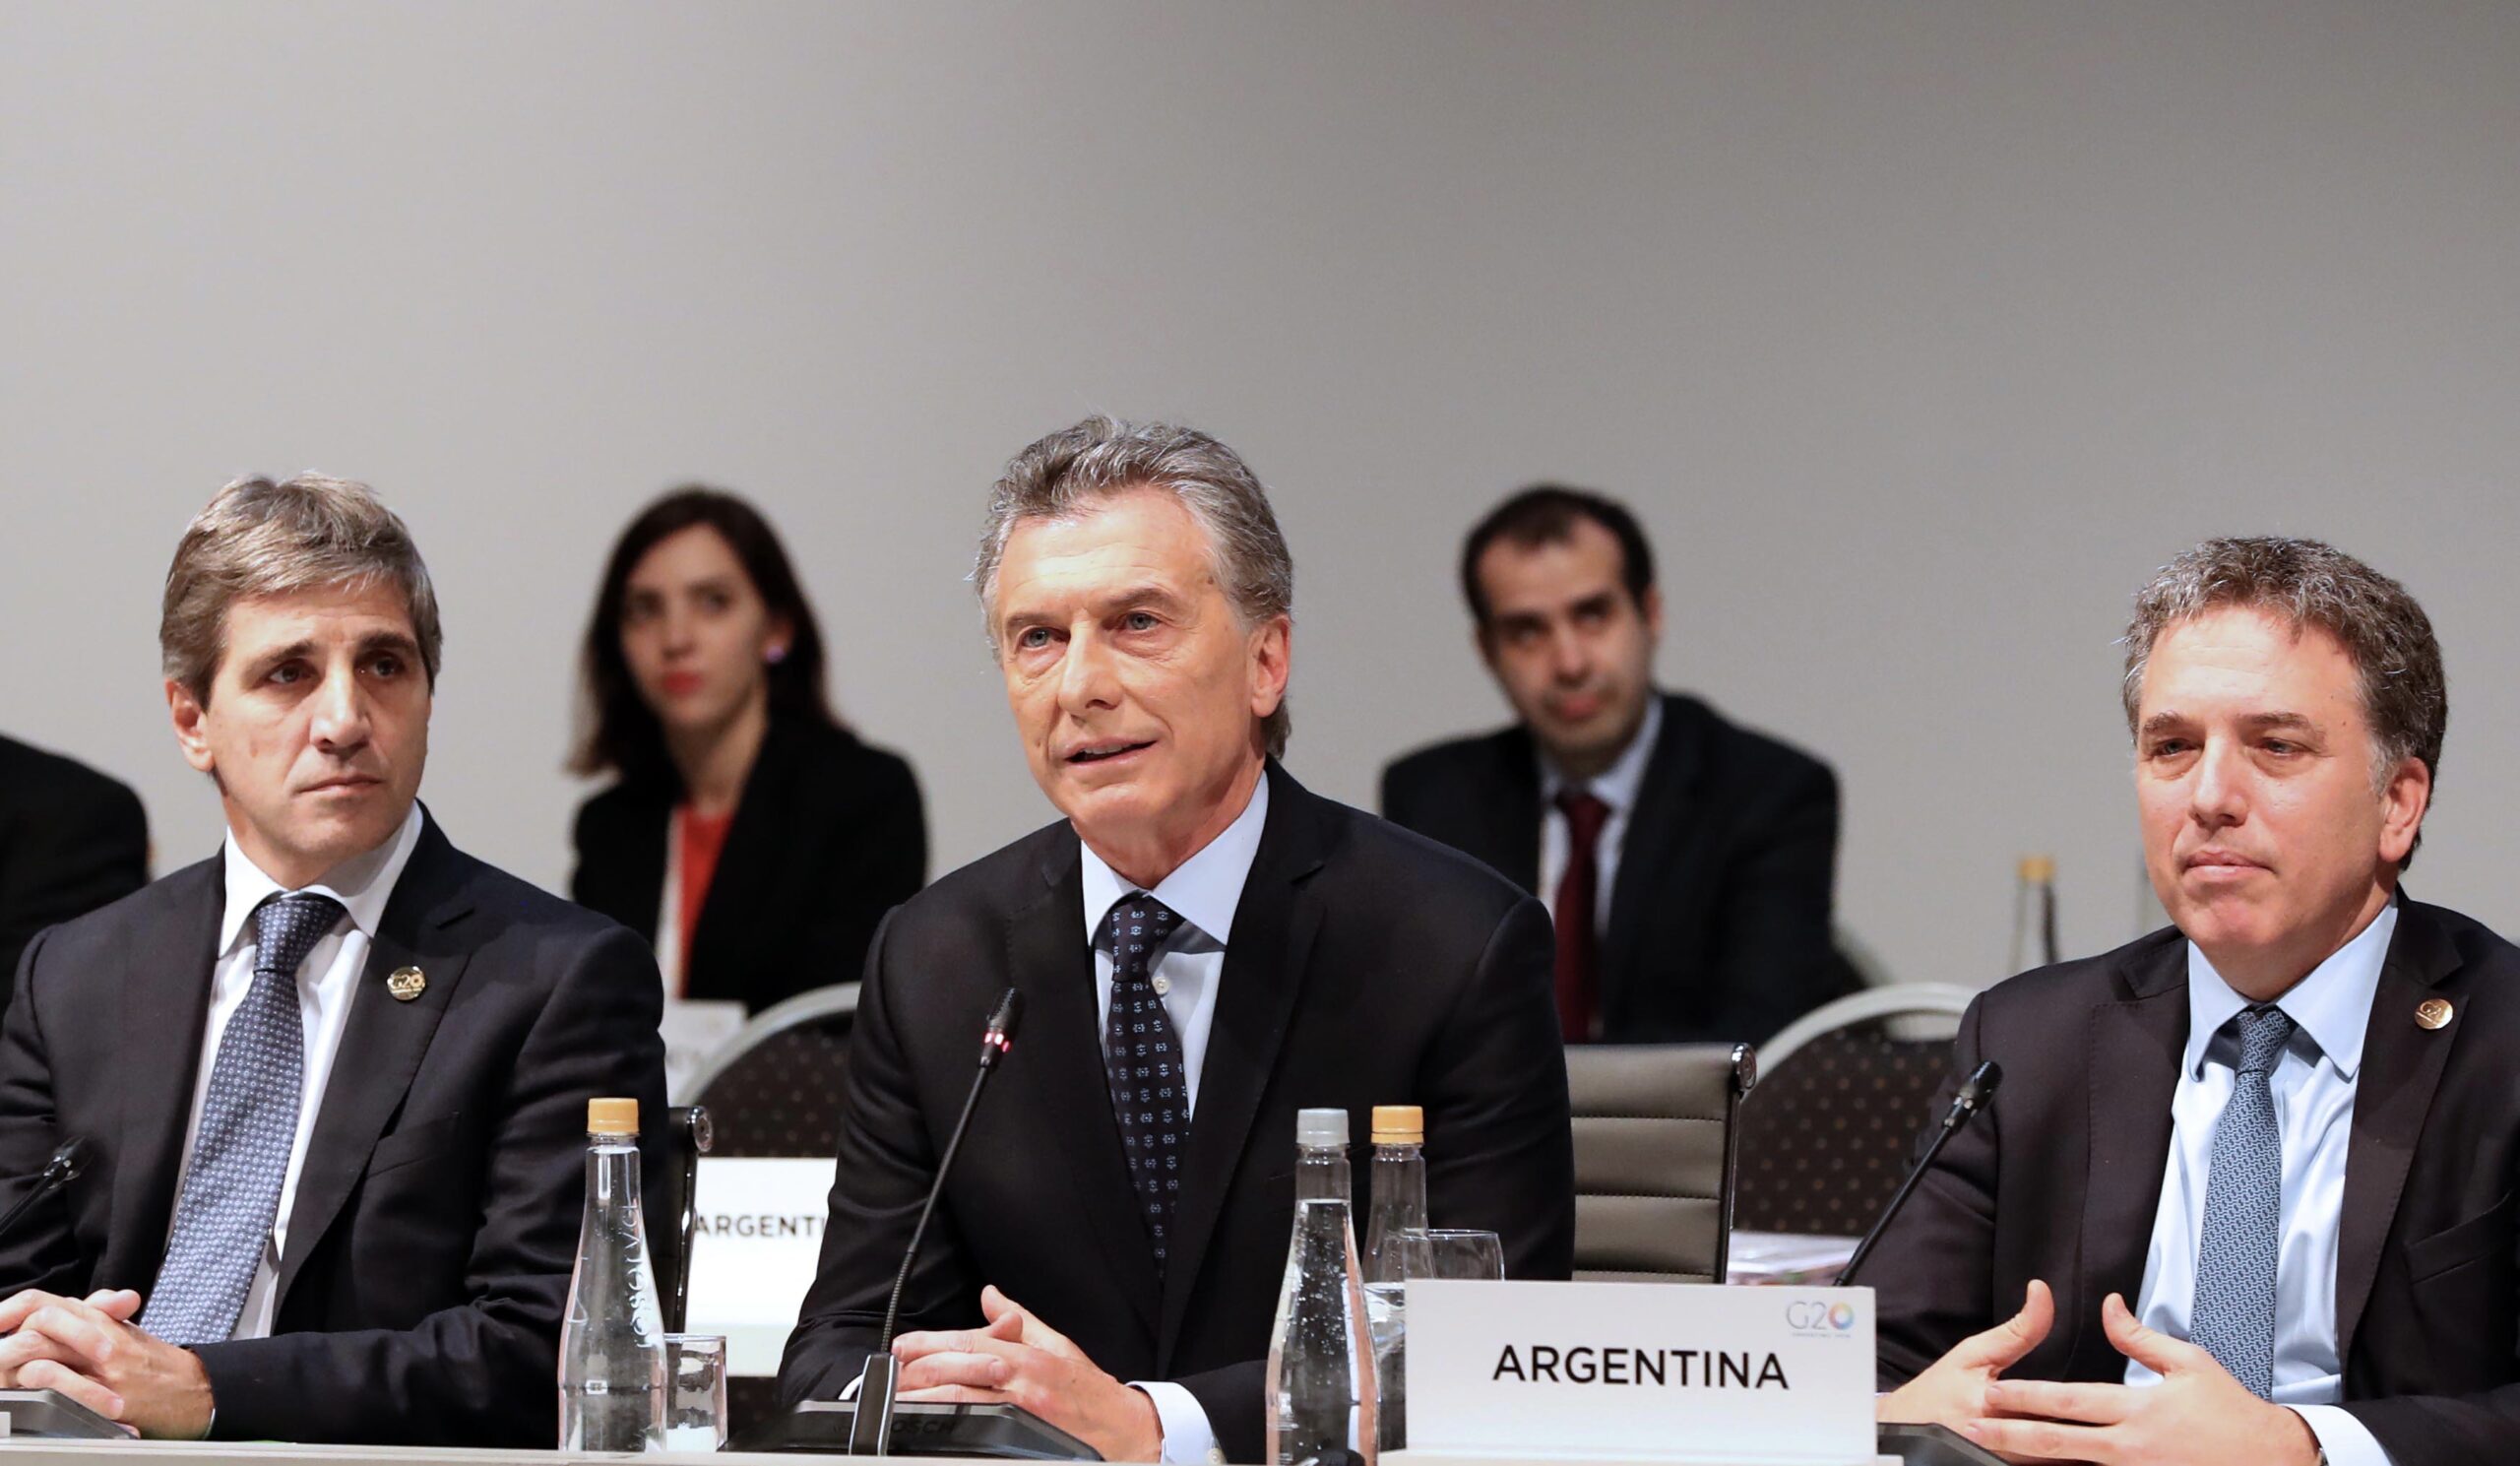 El FMI advierte a los argentinos que sus “condiciones empeorarán” con una inflación del 25% y Milei imputa al peronismo la deuda que contrajo Macri